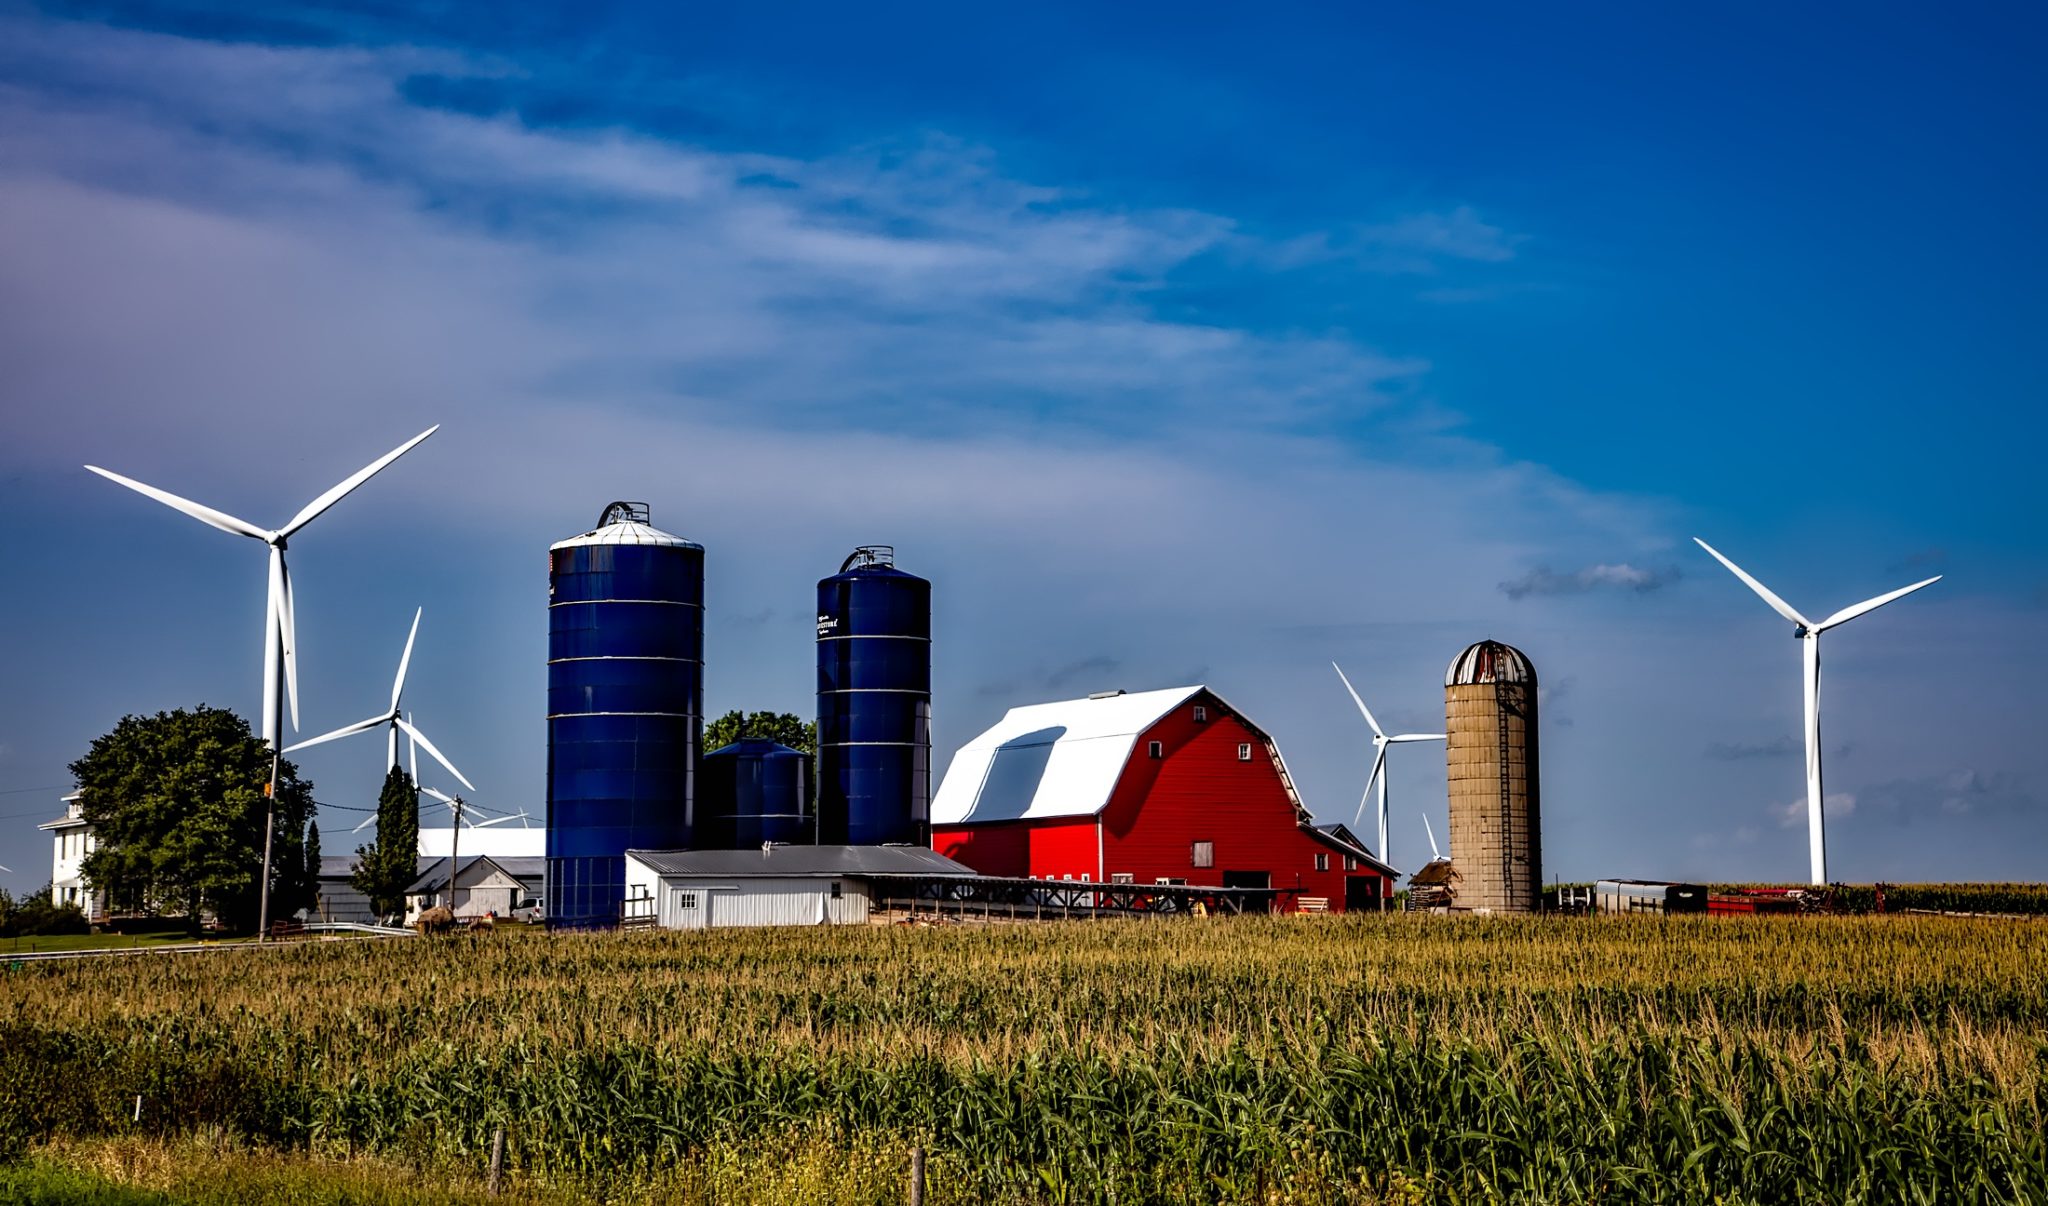 Iowa Farm Grain Silos